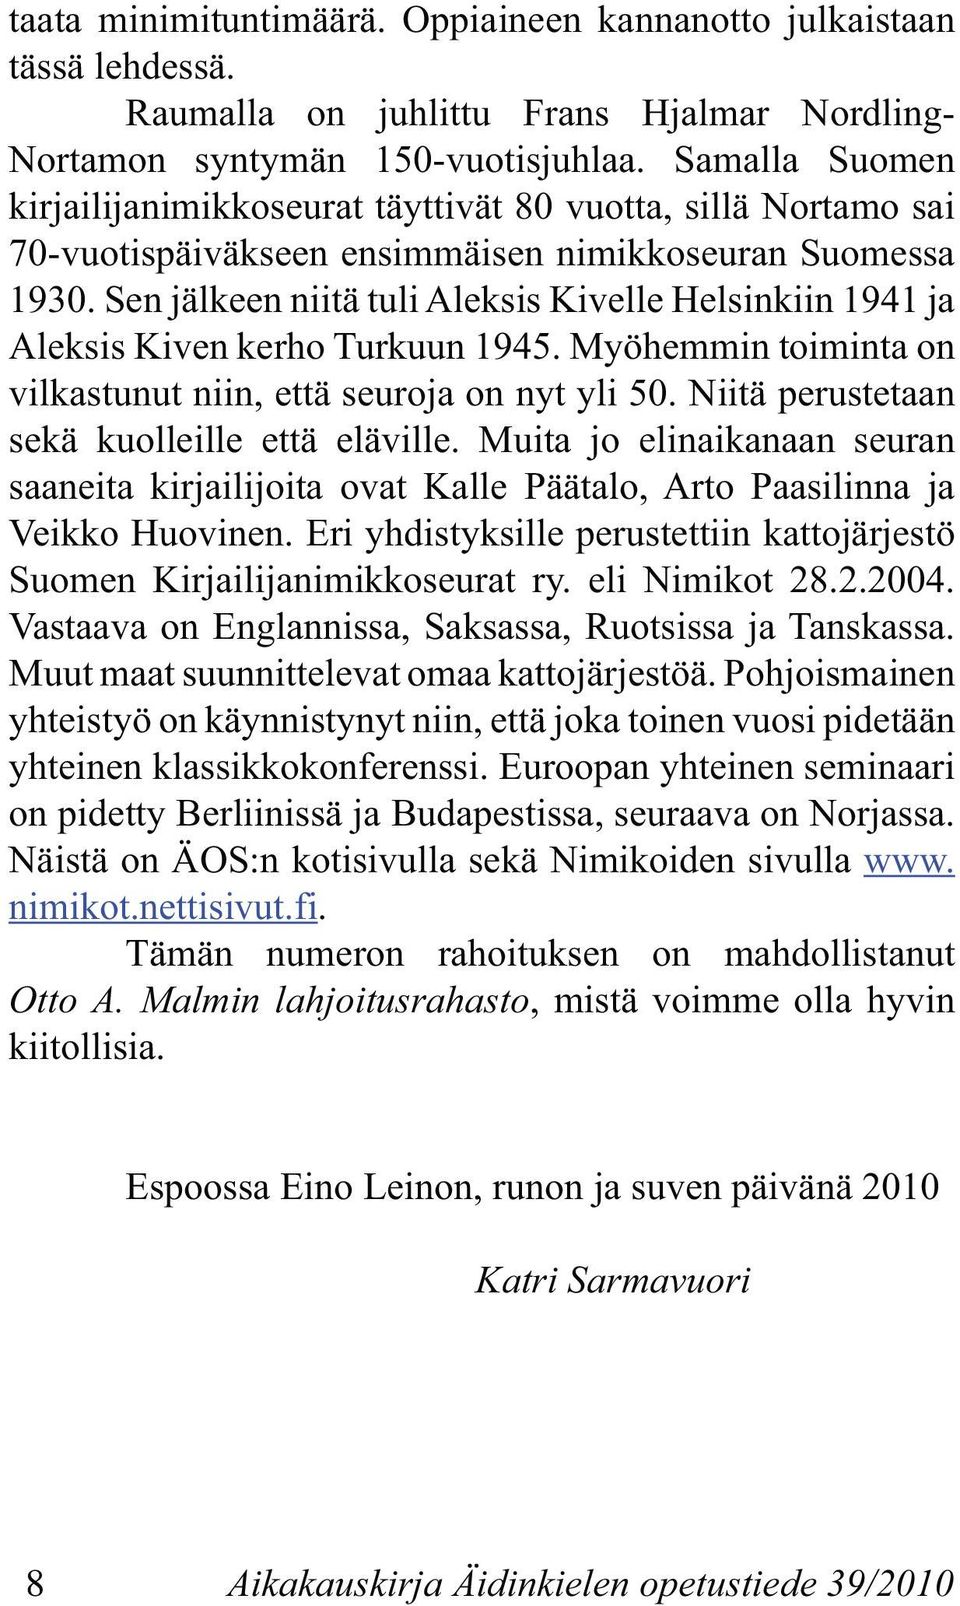 Sen jälkeen niitä tuli Aleksis Kivelle Helsinkiin 1941 ja Aleksis Kiven kerho Turkuun 1945. Myöhemmin toiminta on vilkastunut niin, että seuroja on nyt yli 50.